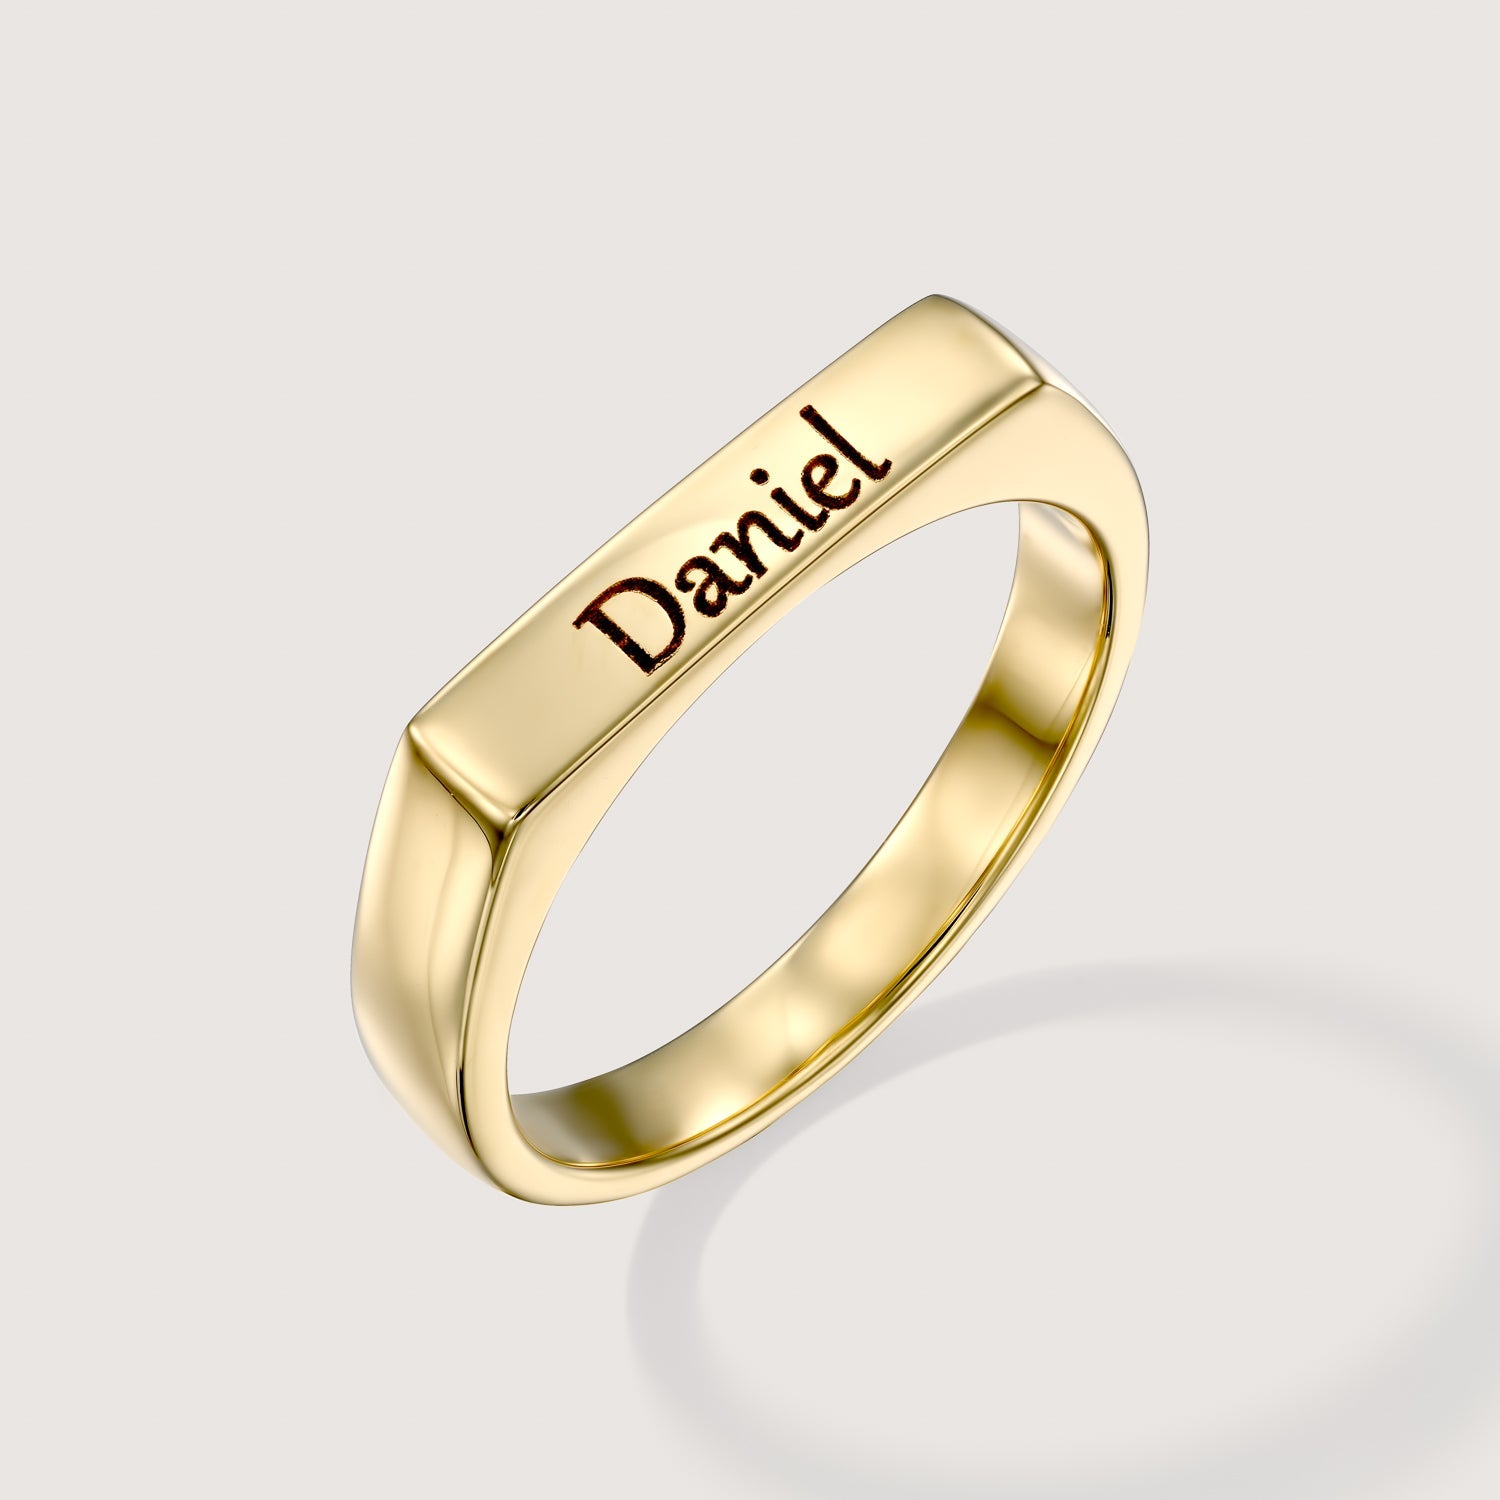 מידה 5.5 Daniel טבעת שרלוט עם חריטה